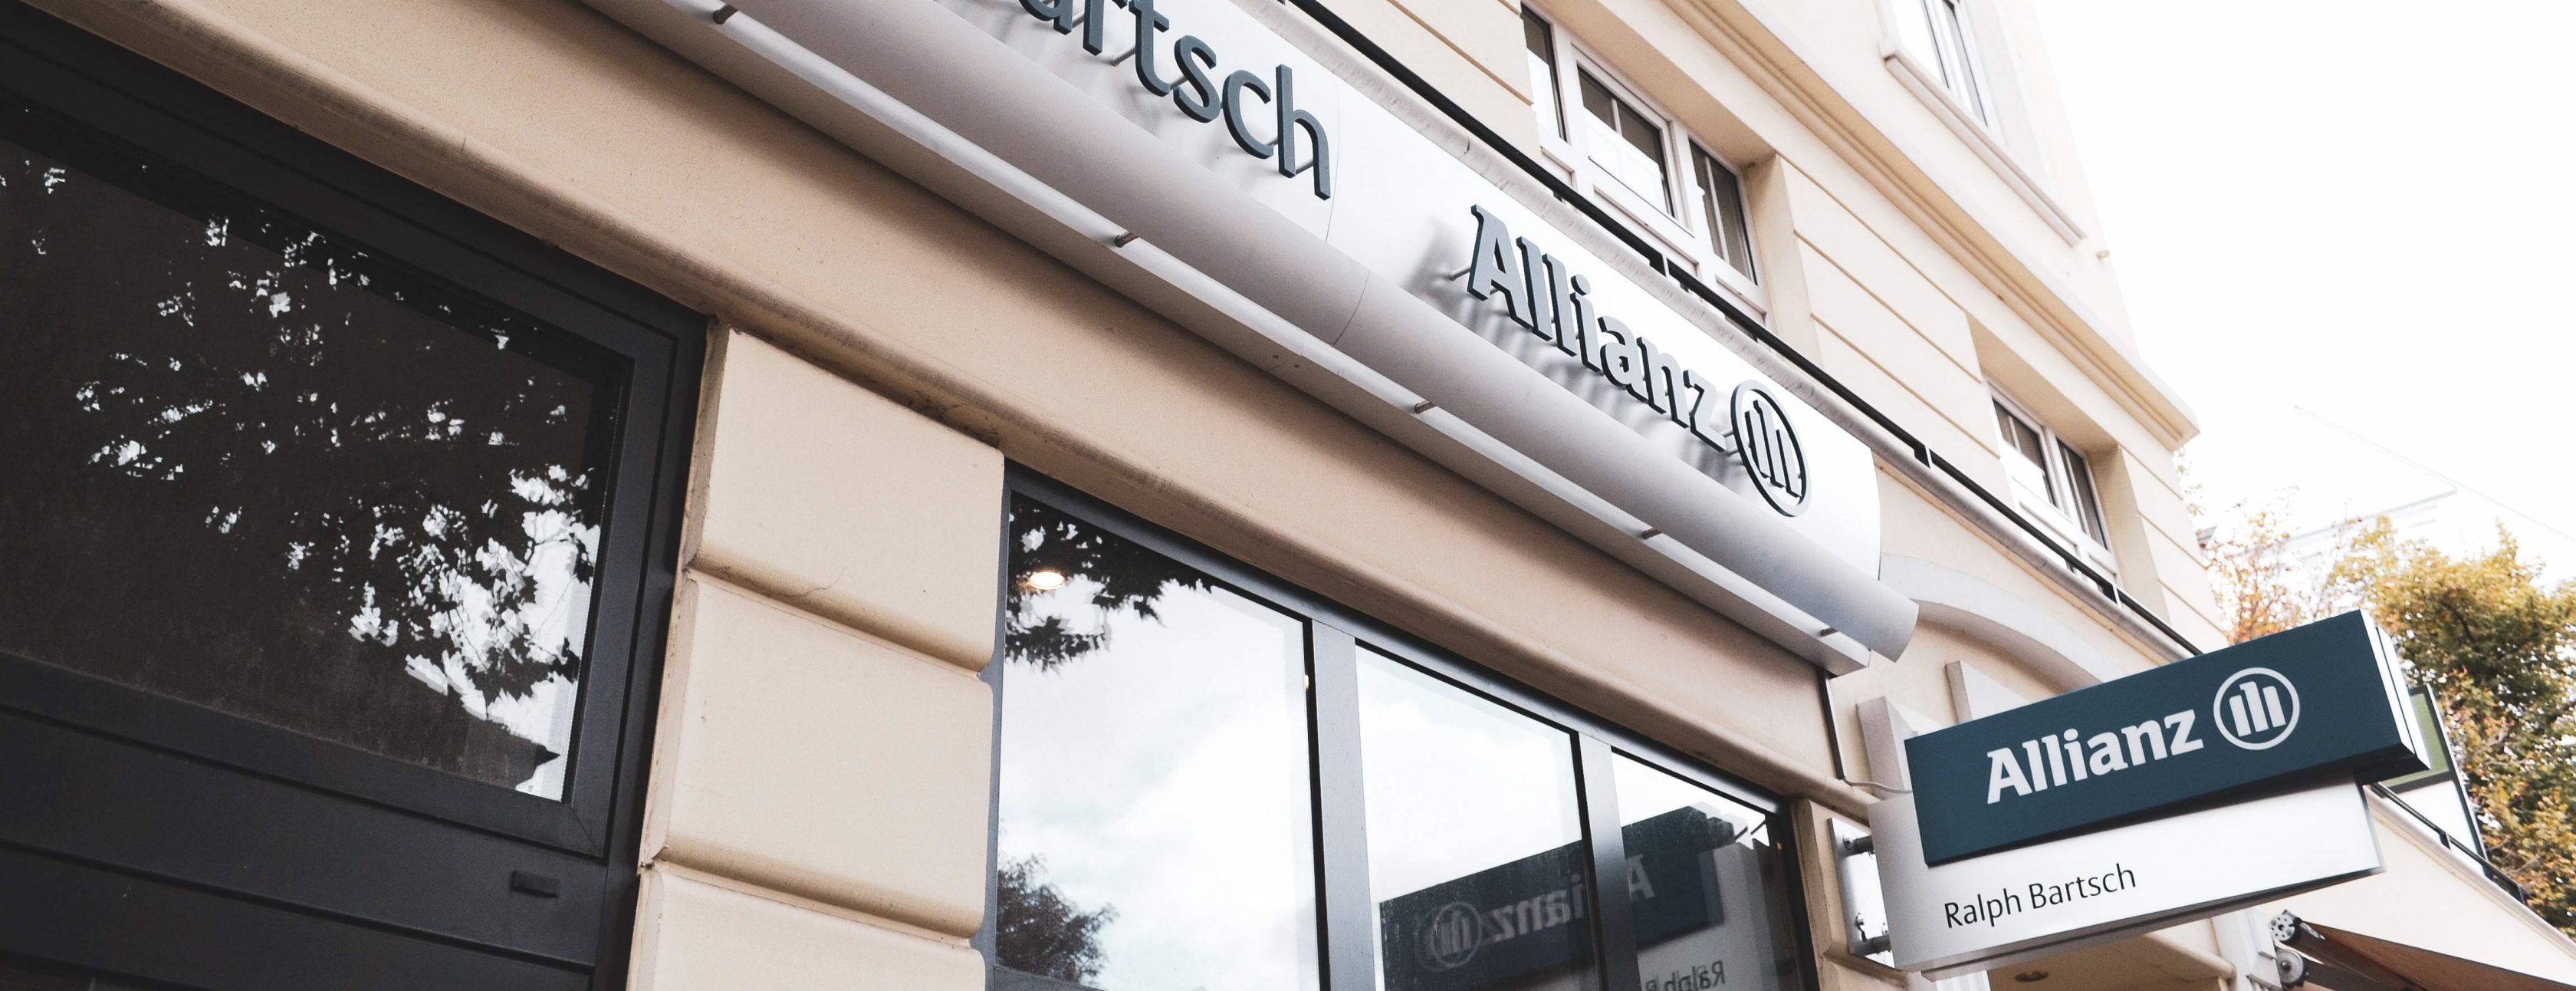 Allianz Versicherung Ralph Bartsch Hamburg - Unsere Agentur in Hamburg